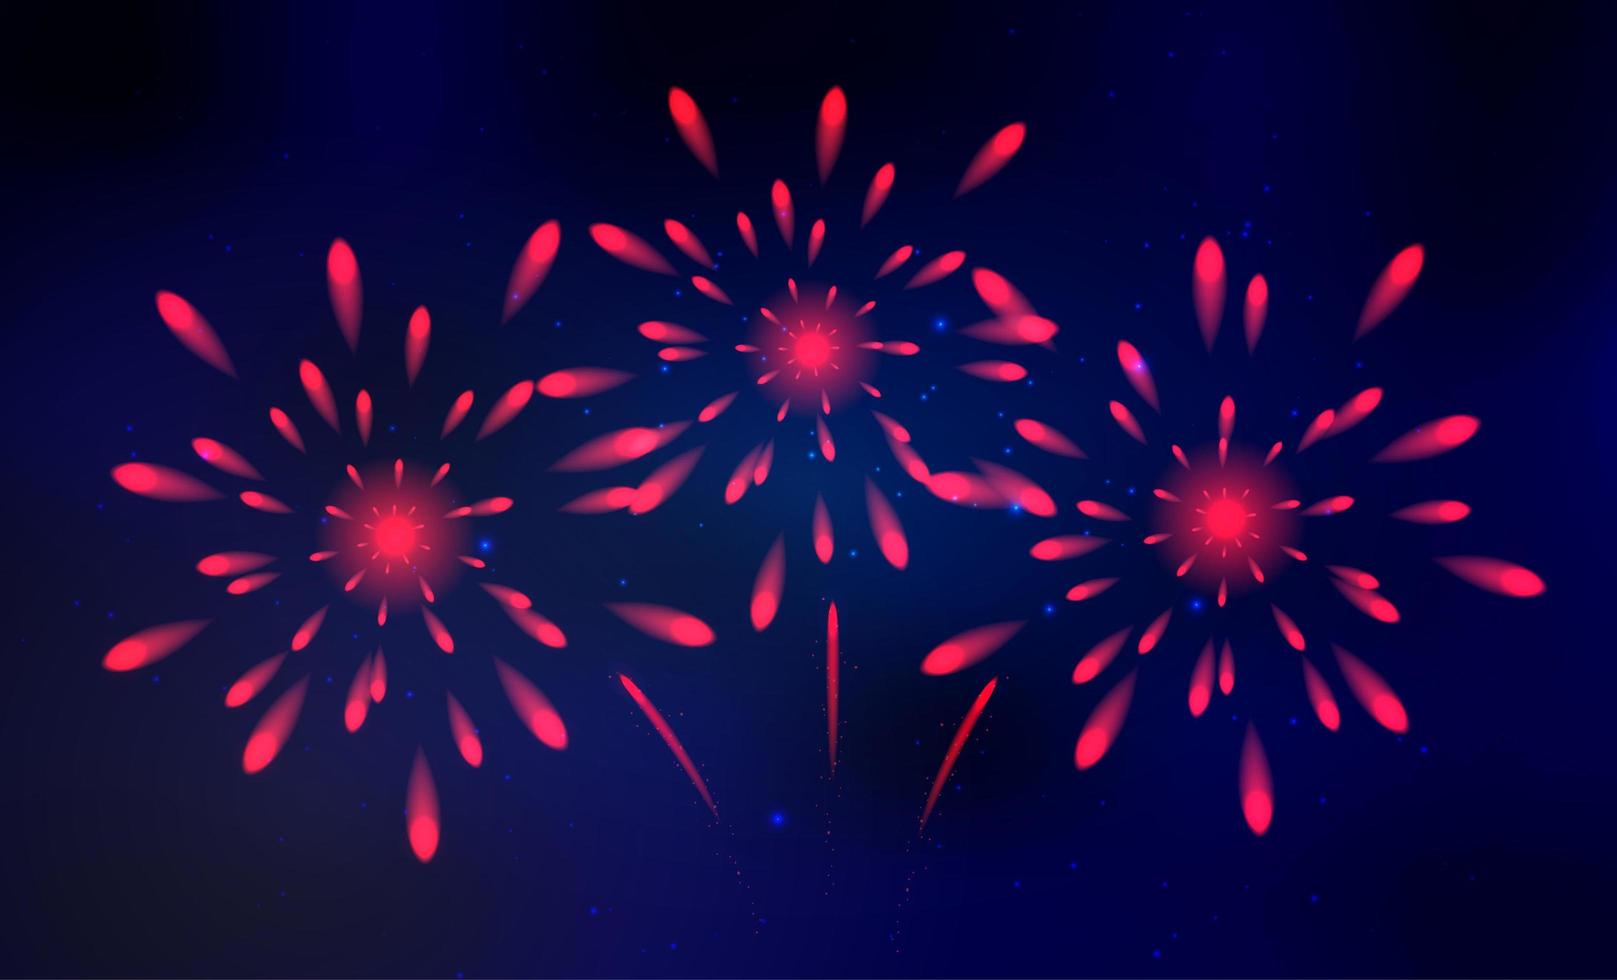 vetor de fogos de artifício coloridos, brilhando no céu azul escuro, fogos de artifício para eventos festivos, ano novo, natal.